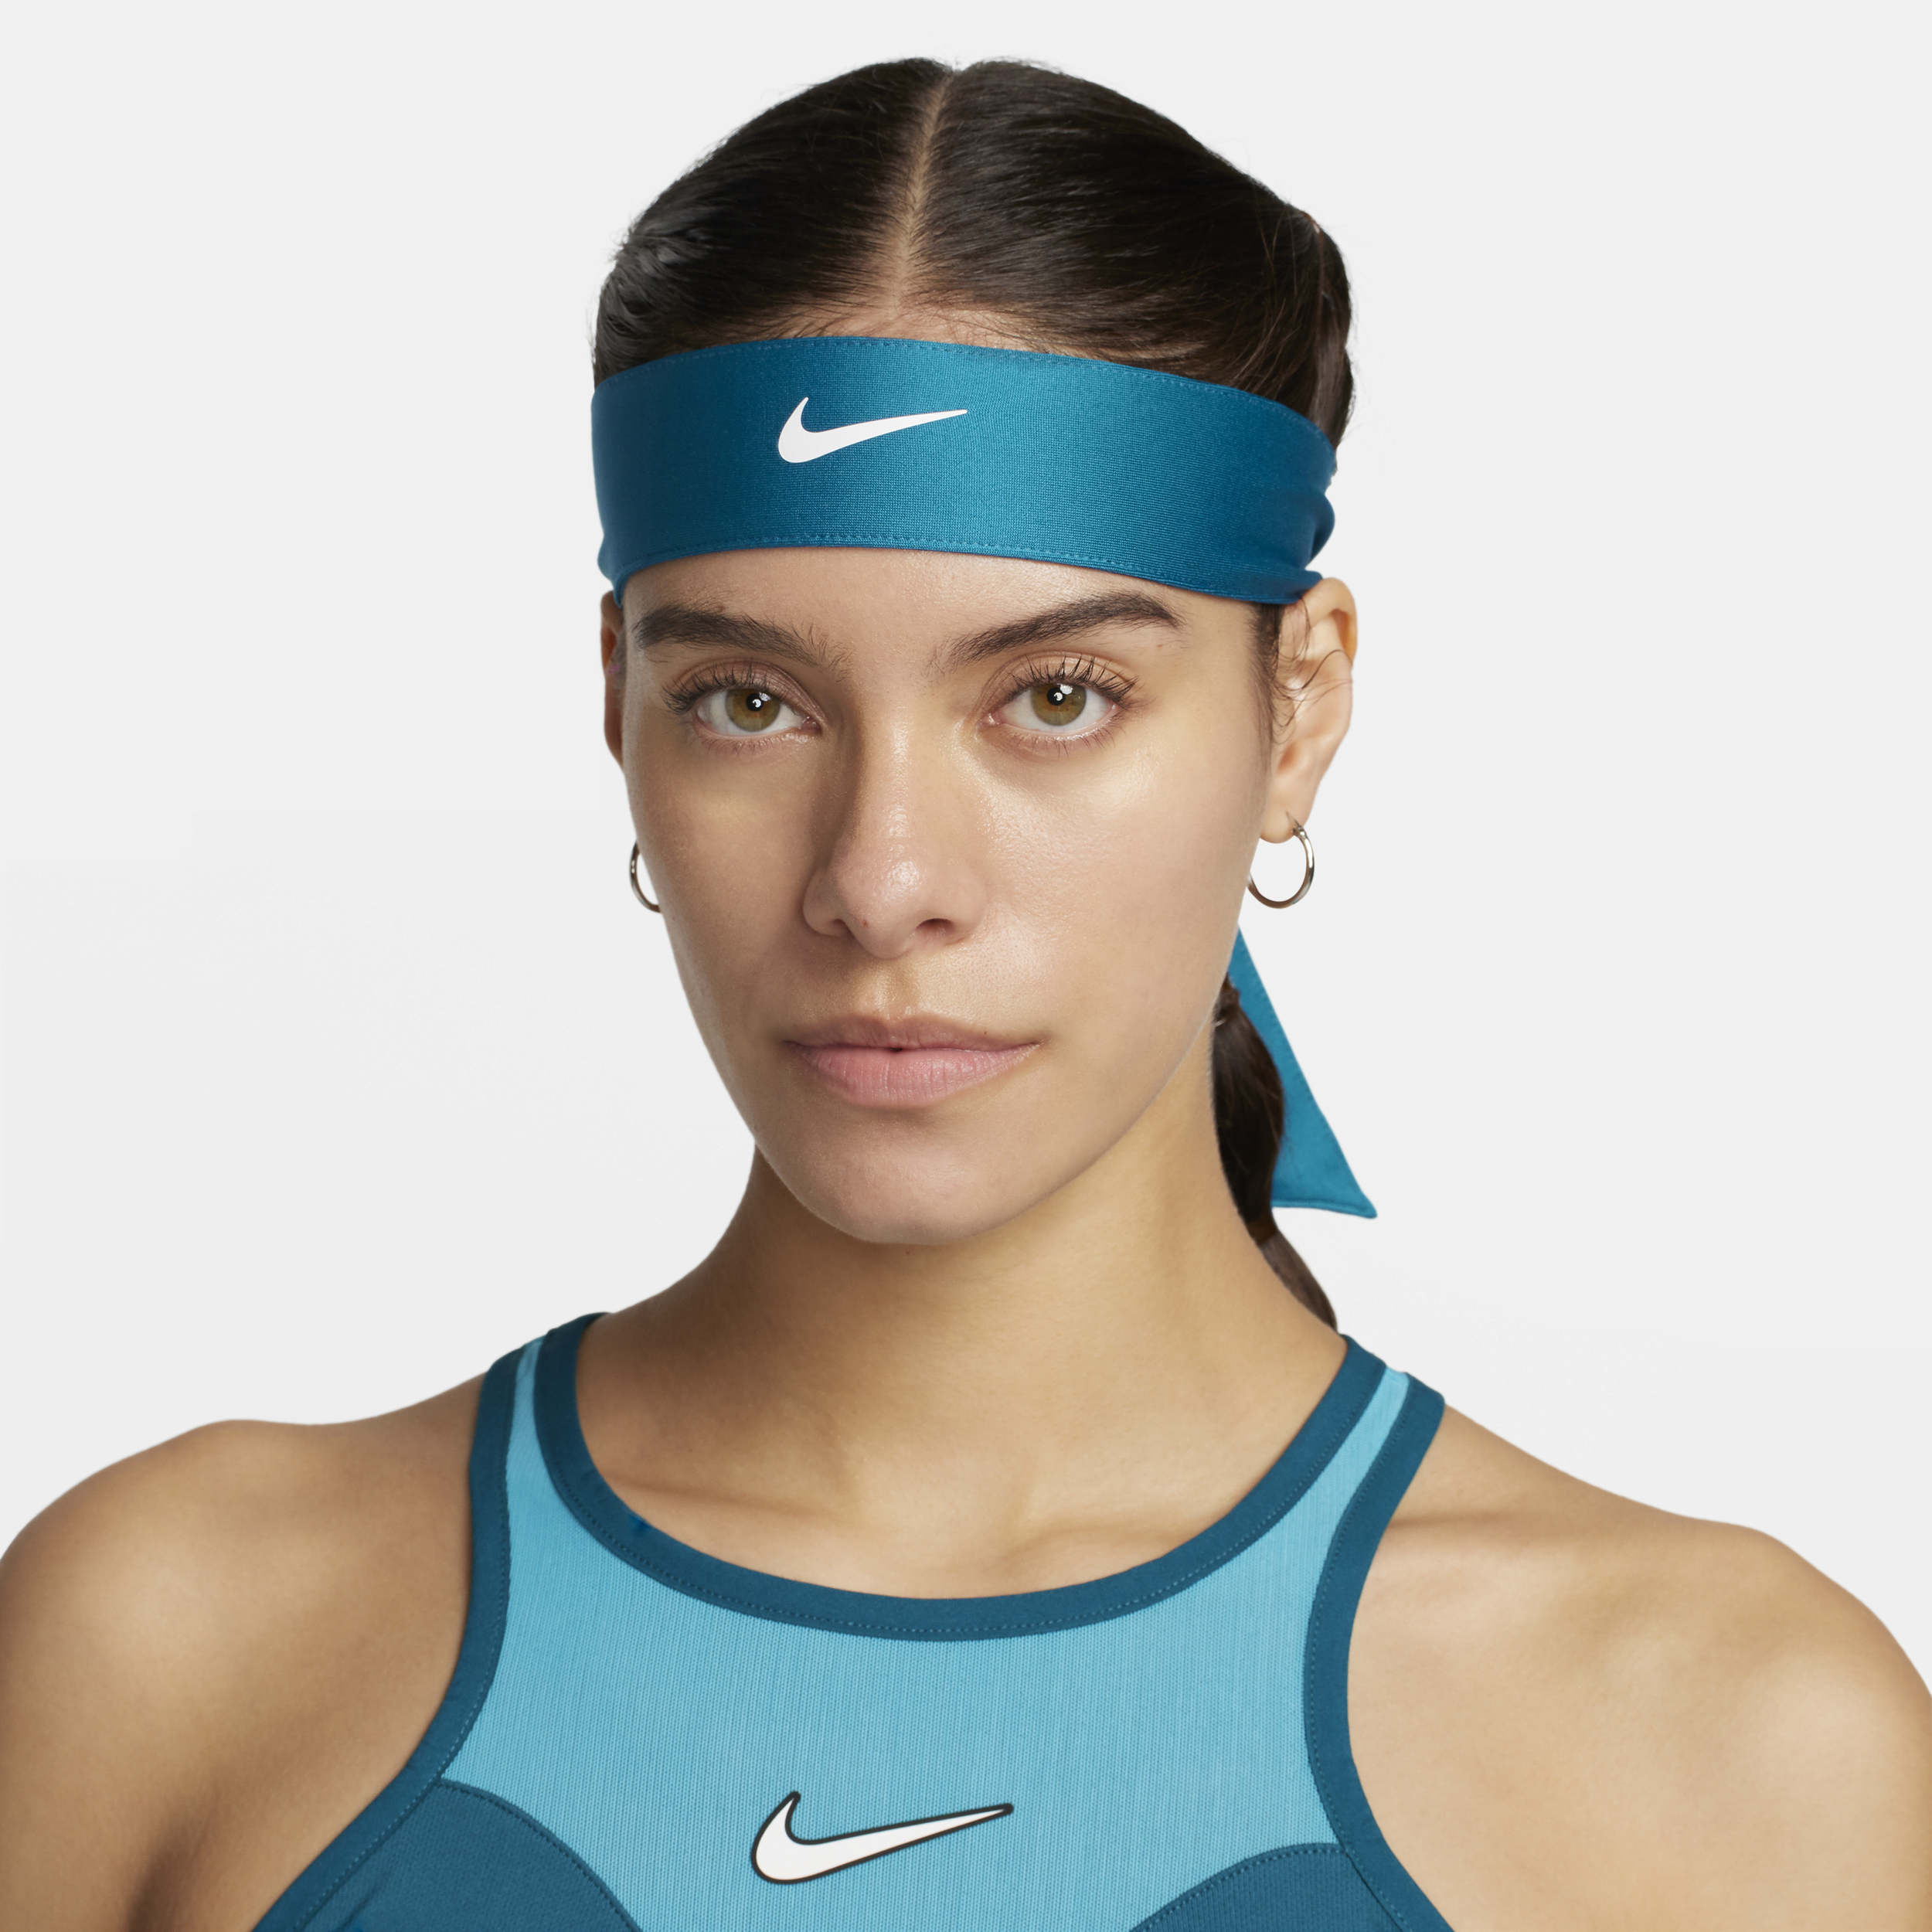 NikeCourt Tennishoofdband voor dames - Blauw